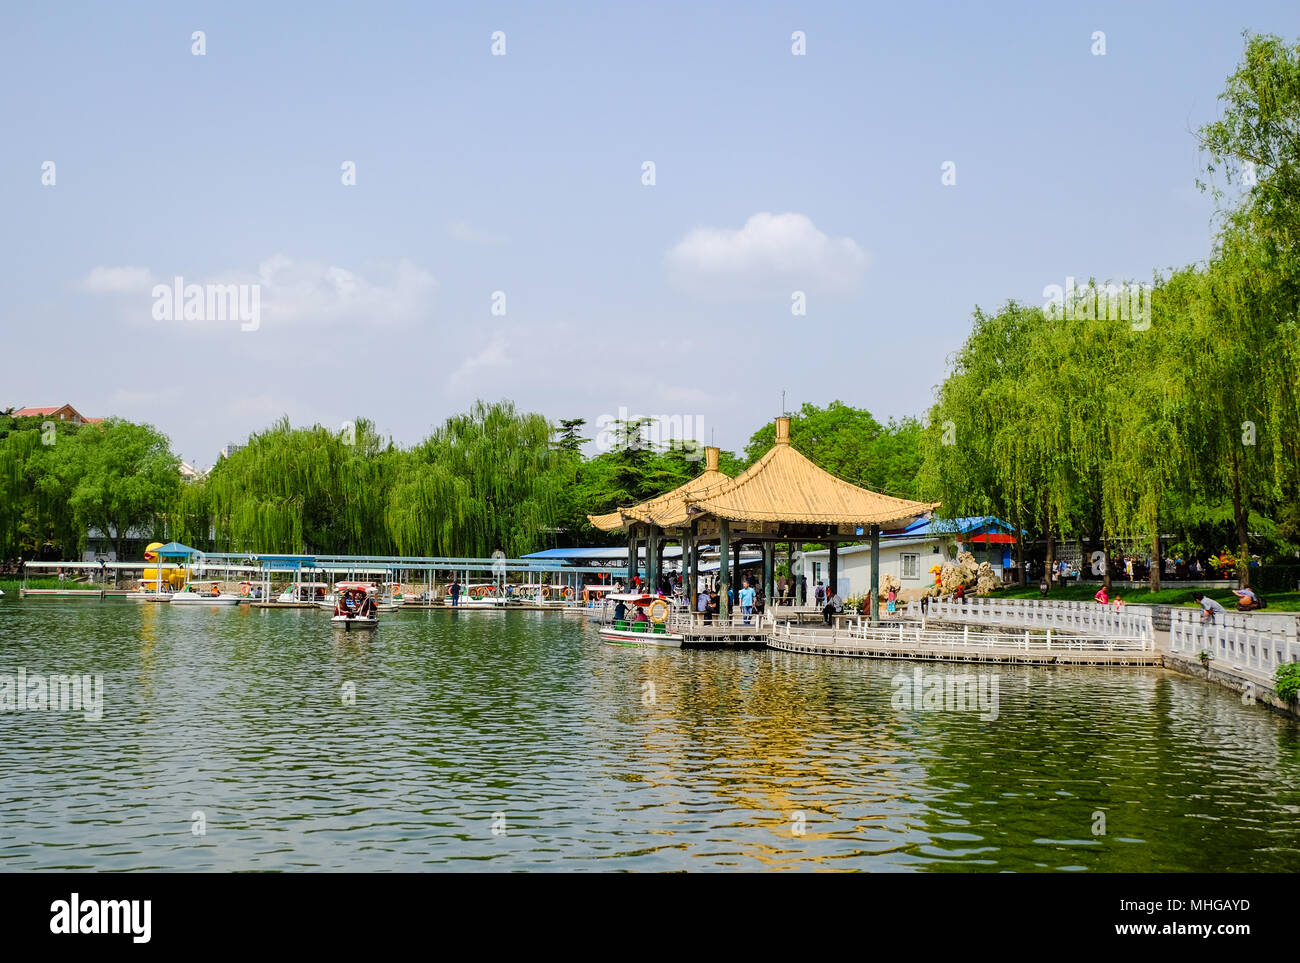 BEIJING, CHINE - 30 avril 2018 : Les gens prennent un tour en bateau de plaisance dans un parc. Parc Taoranting est un grand parc de la ville situé dans la région de Xuanwu Distric Banque D'Images